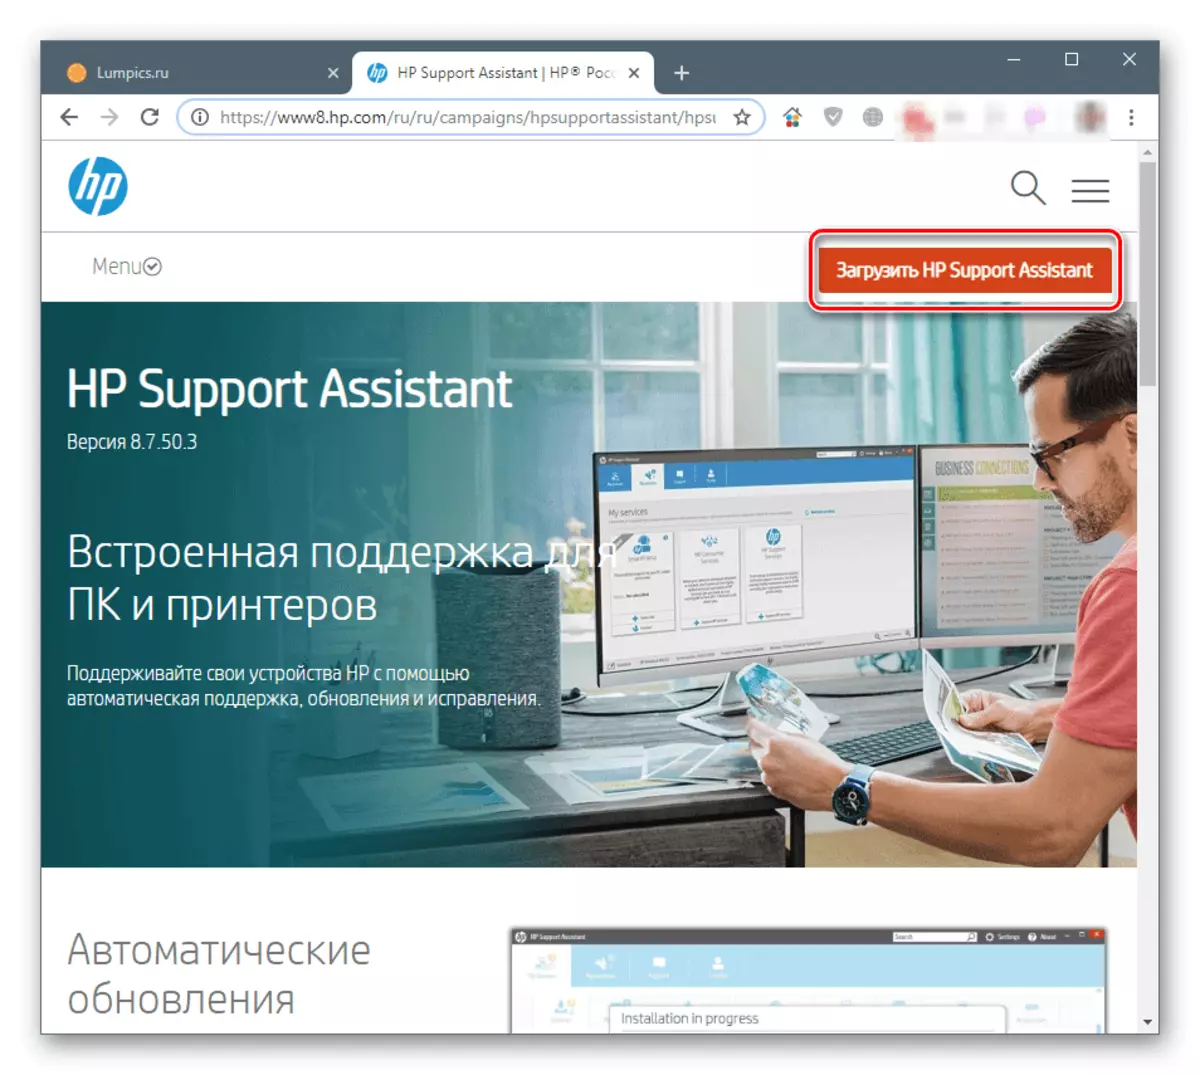 Descargar HP Support Assistant do sitio web oficial